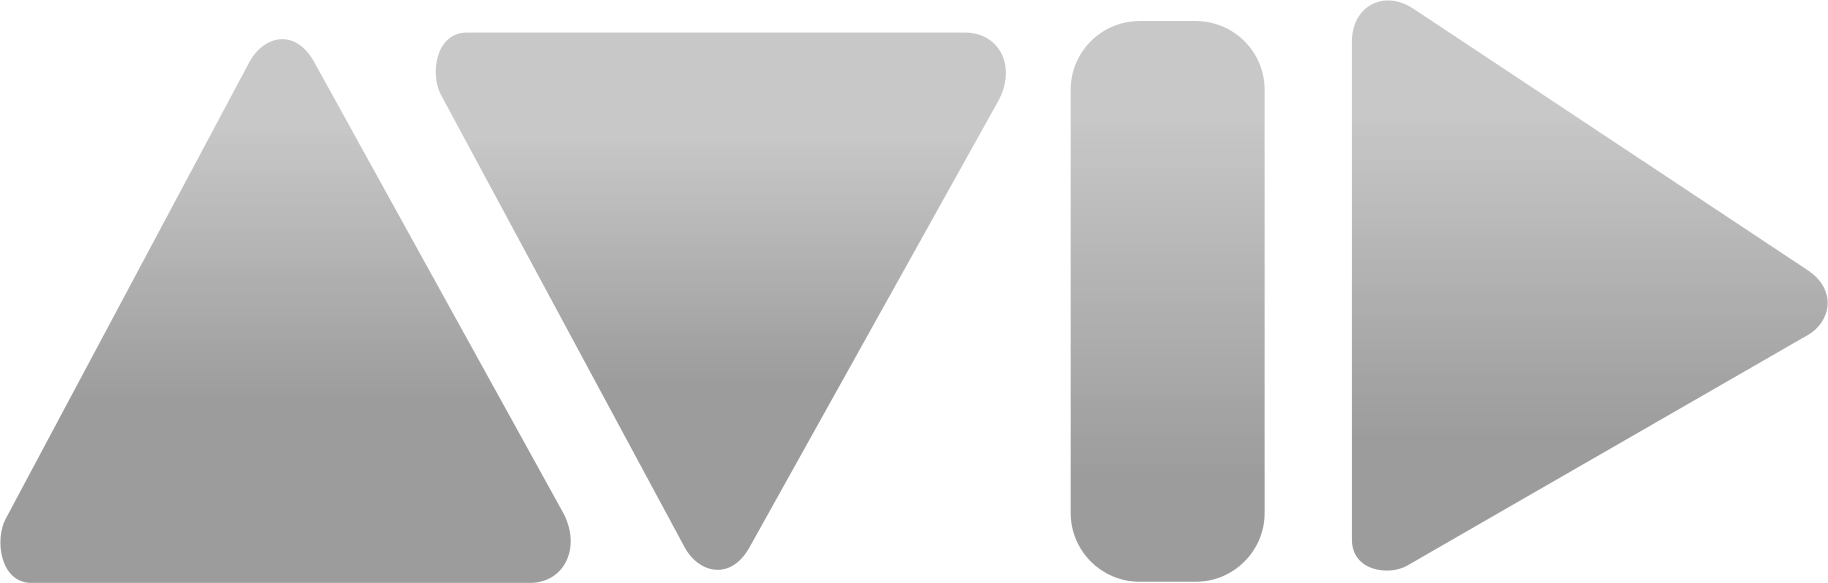 Avid logo white